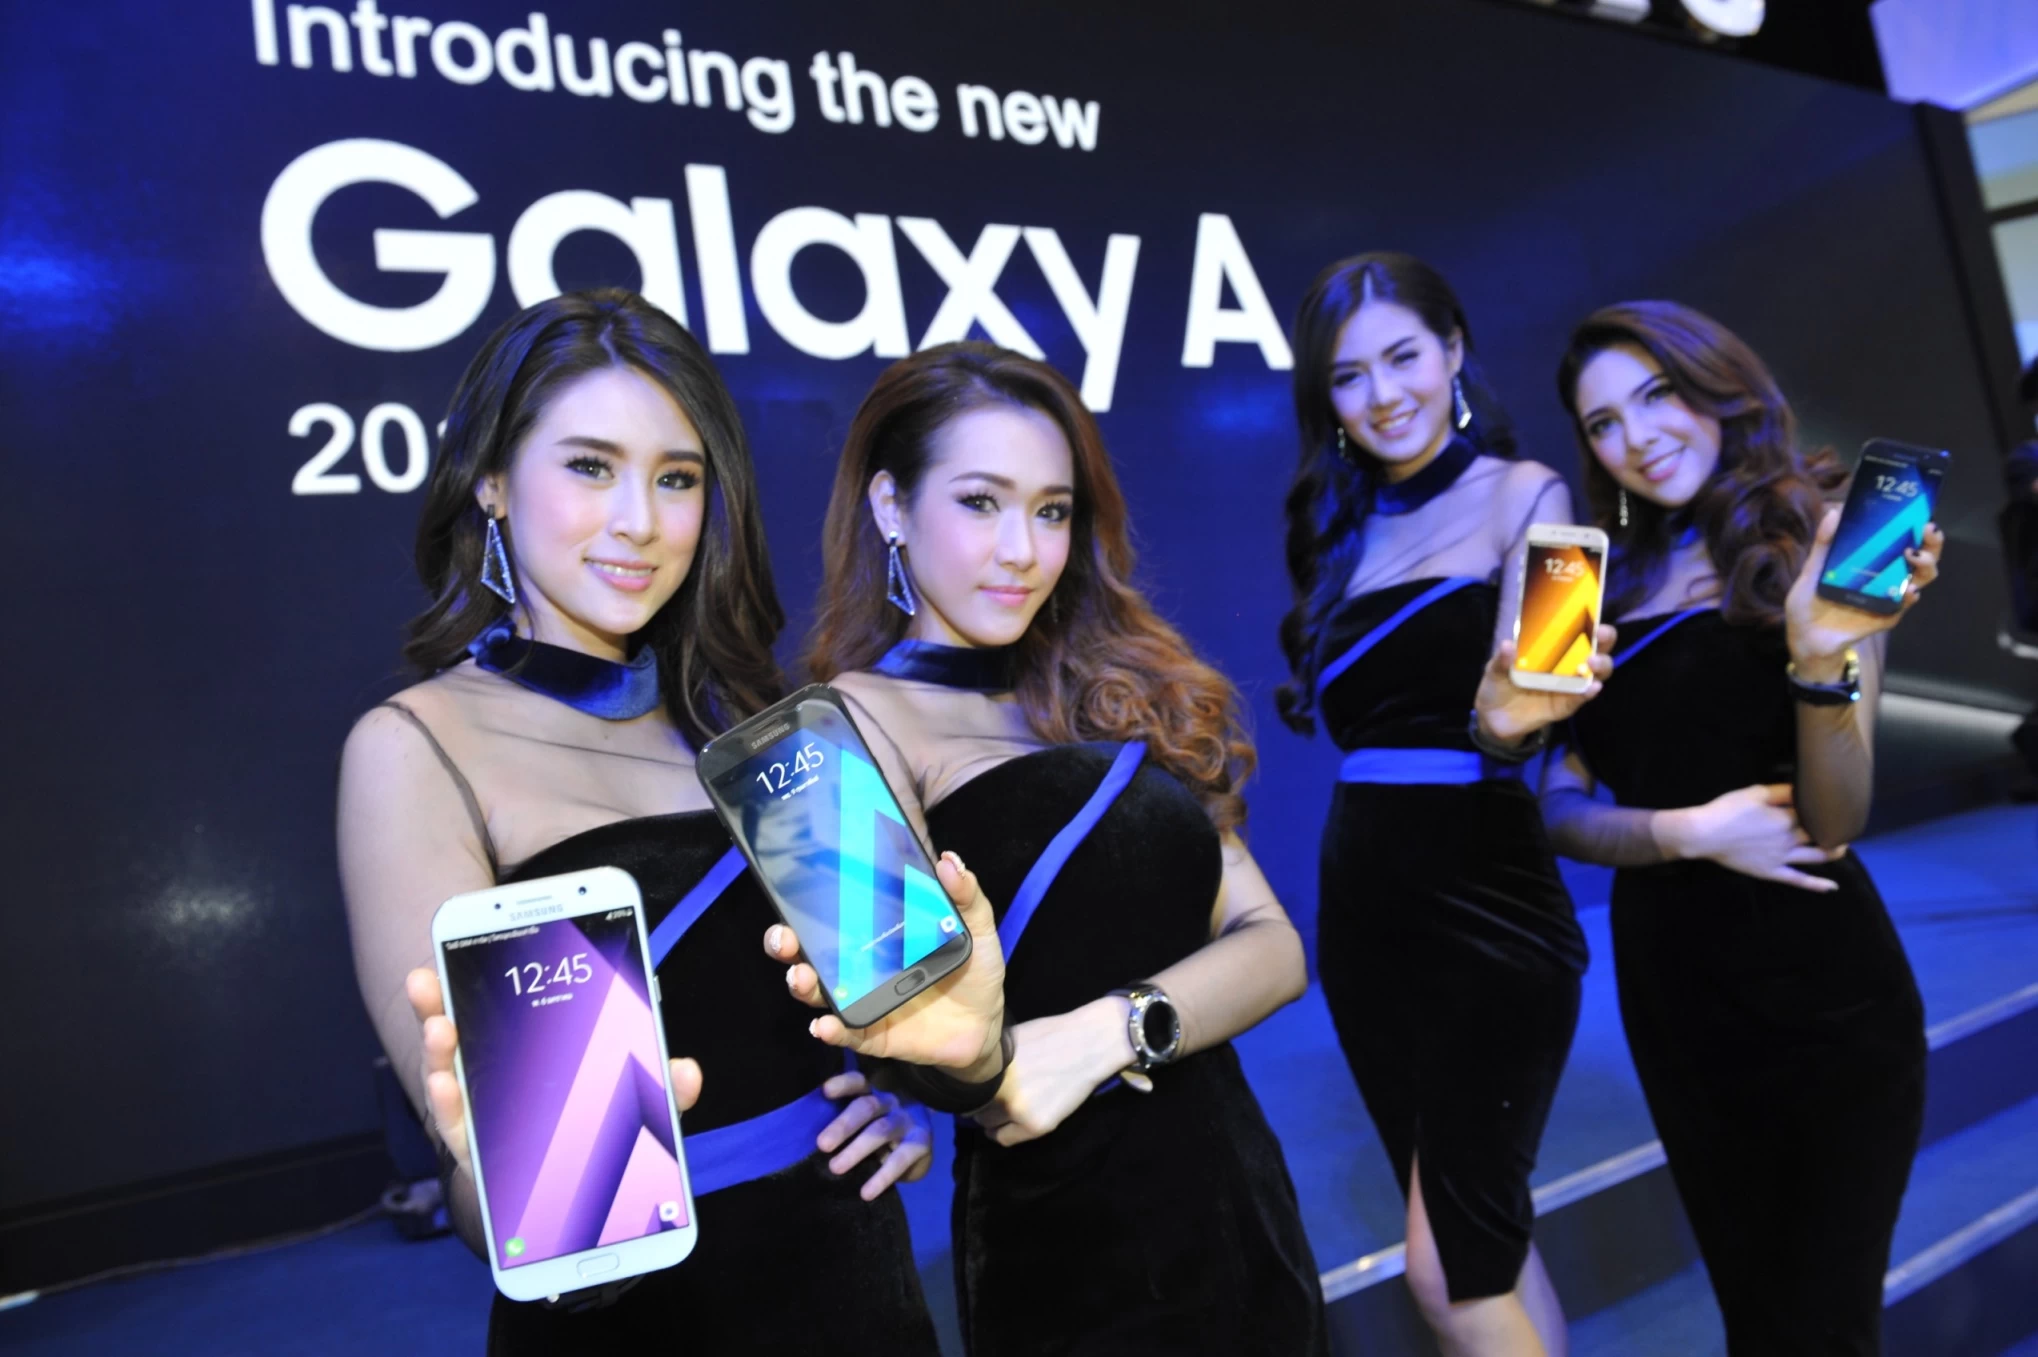 กาแลคซี่ เอ 2017 3 | galaxy a 2017 | [TME 2017] โปรโมชั่น Samsung ภายในงาน Mobile Expo และการเปิดตัว Galaxy A 2017 อย่างเป็นทางการ